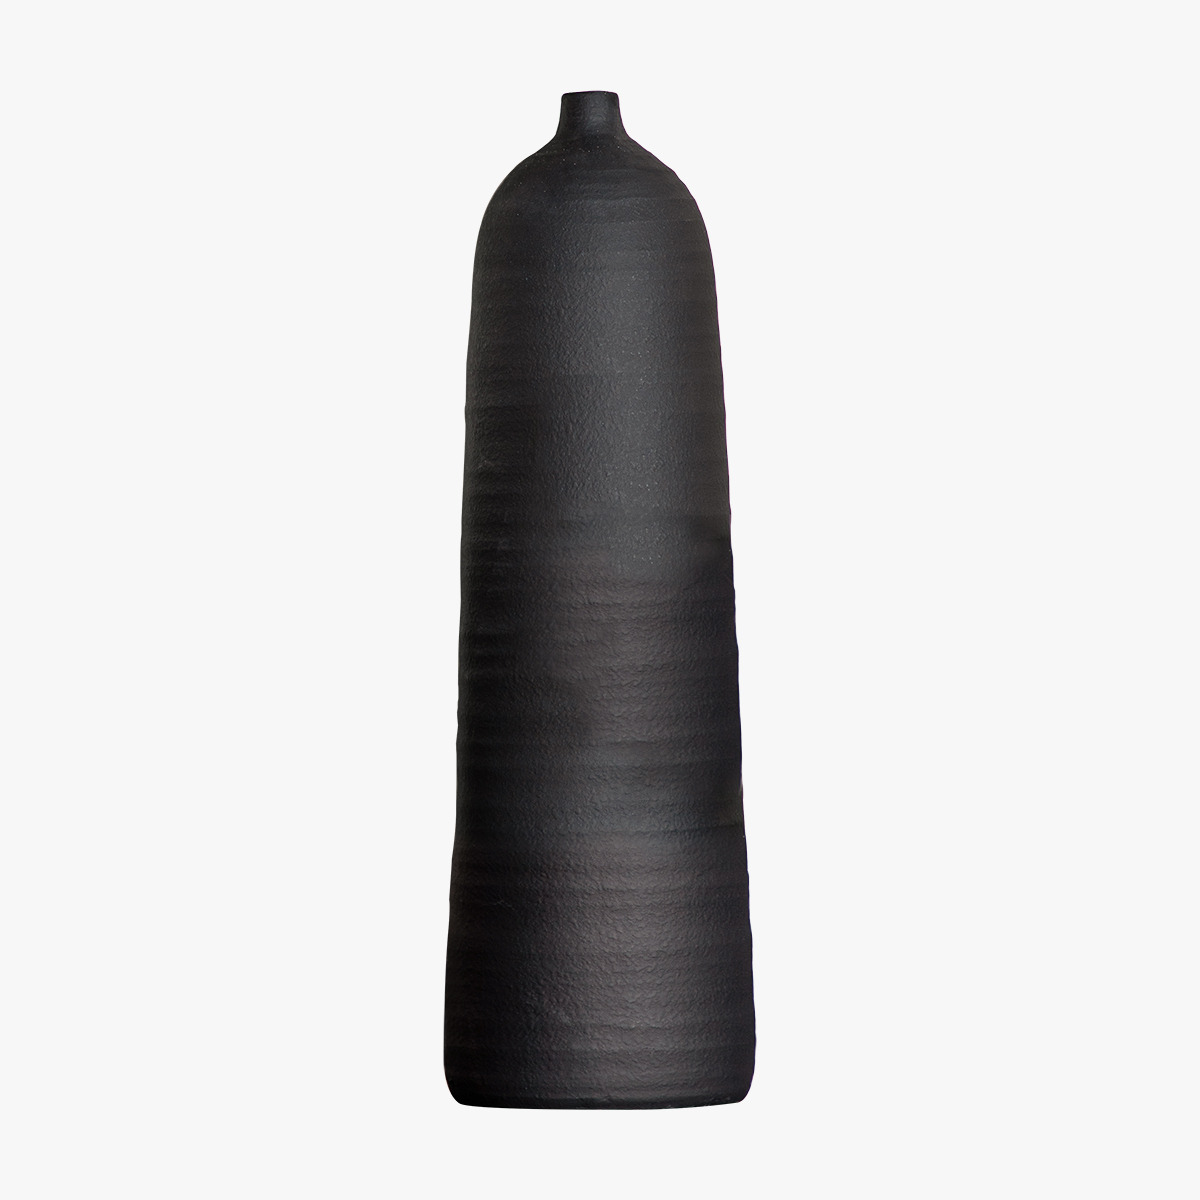 Elmhurst Vase in Black Large